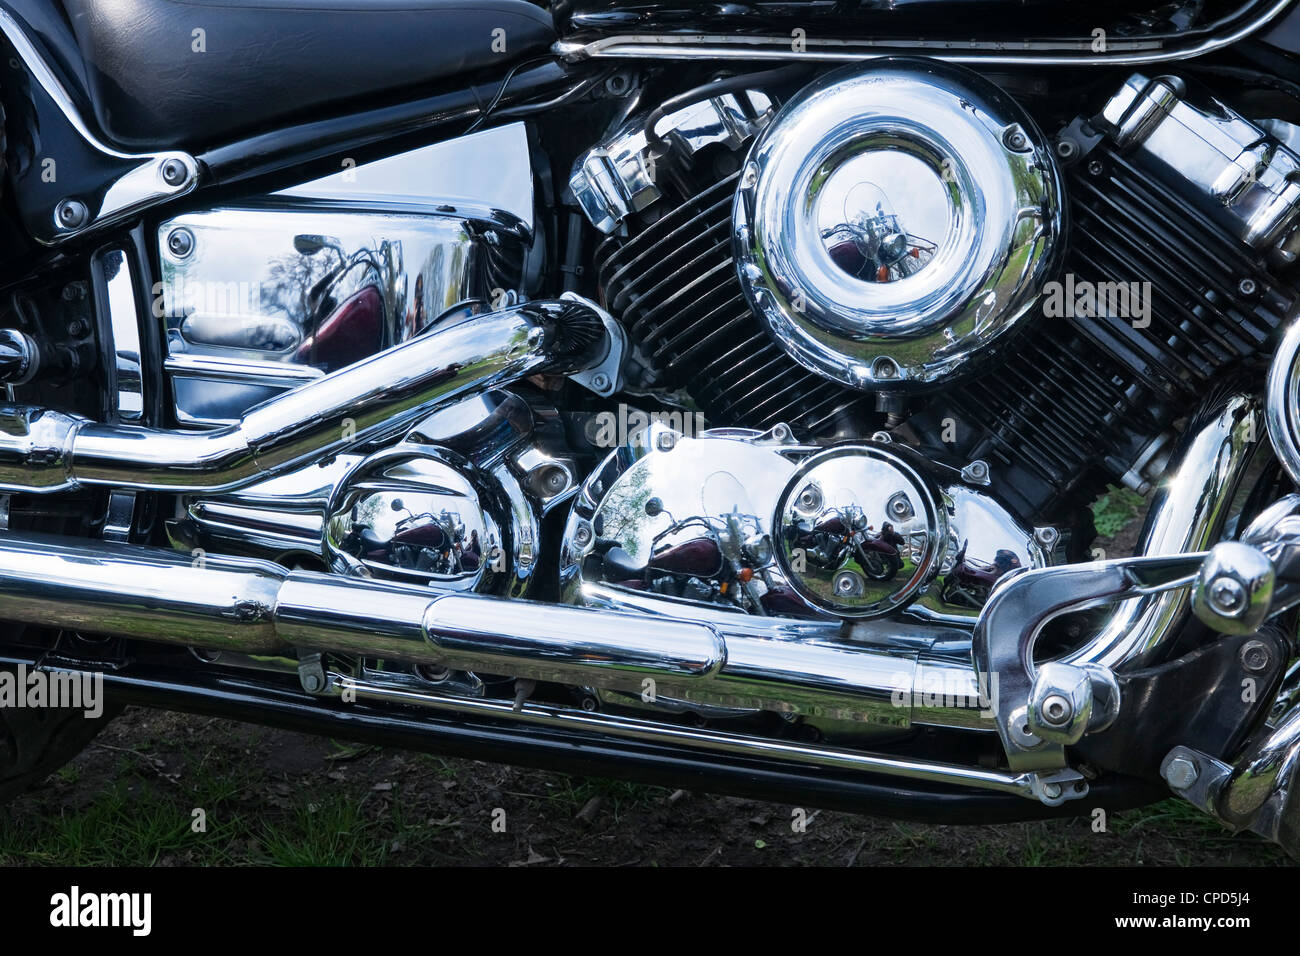 Chromed motorcycle engine close-up Stock Photo